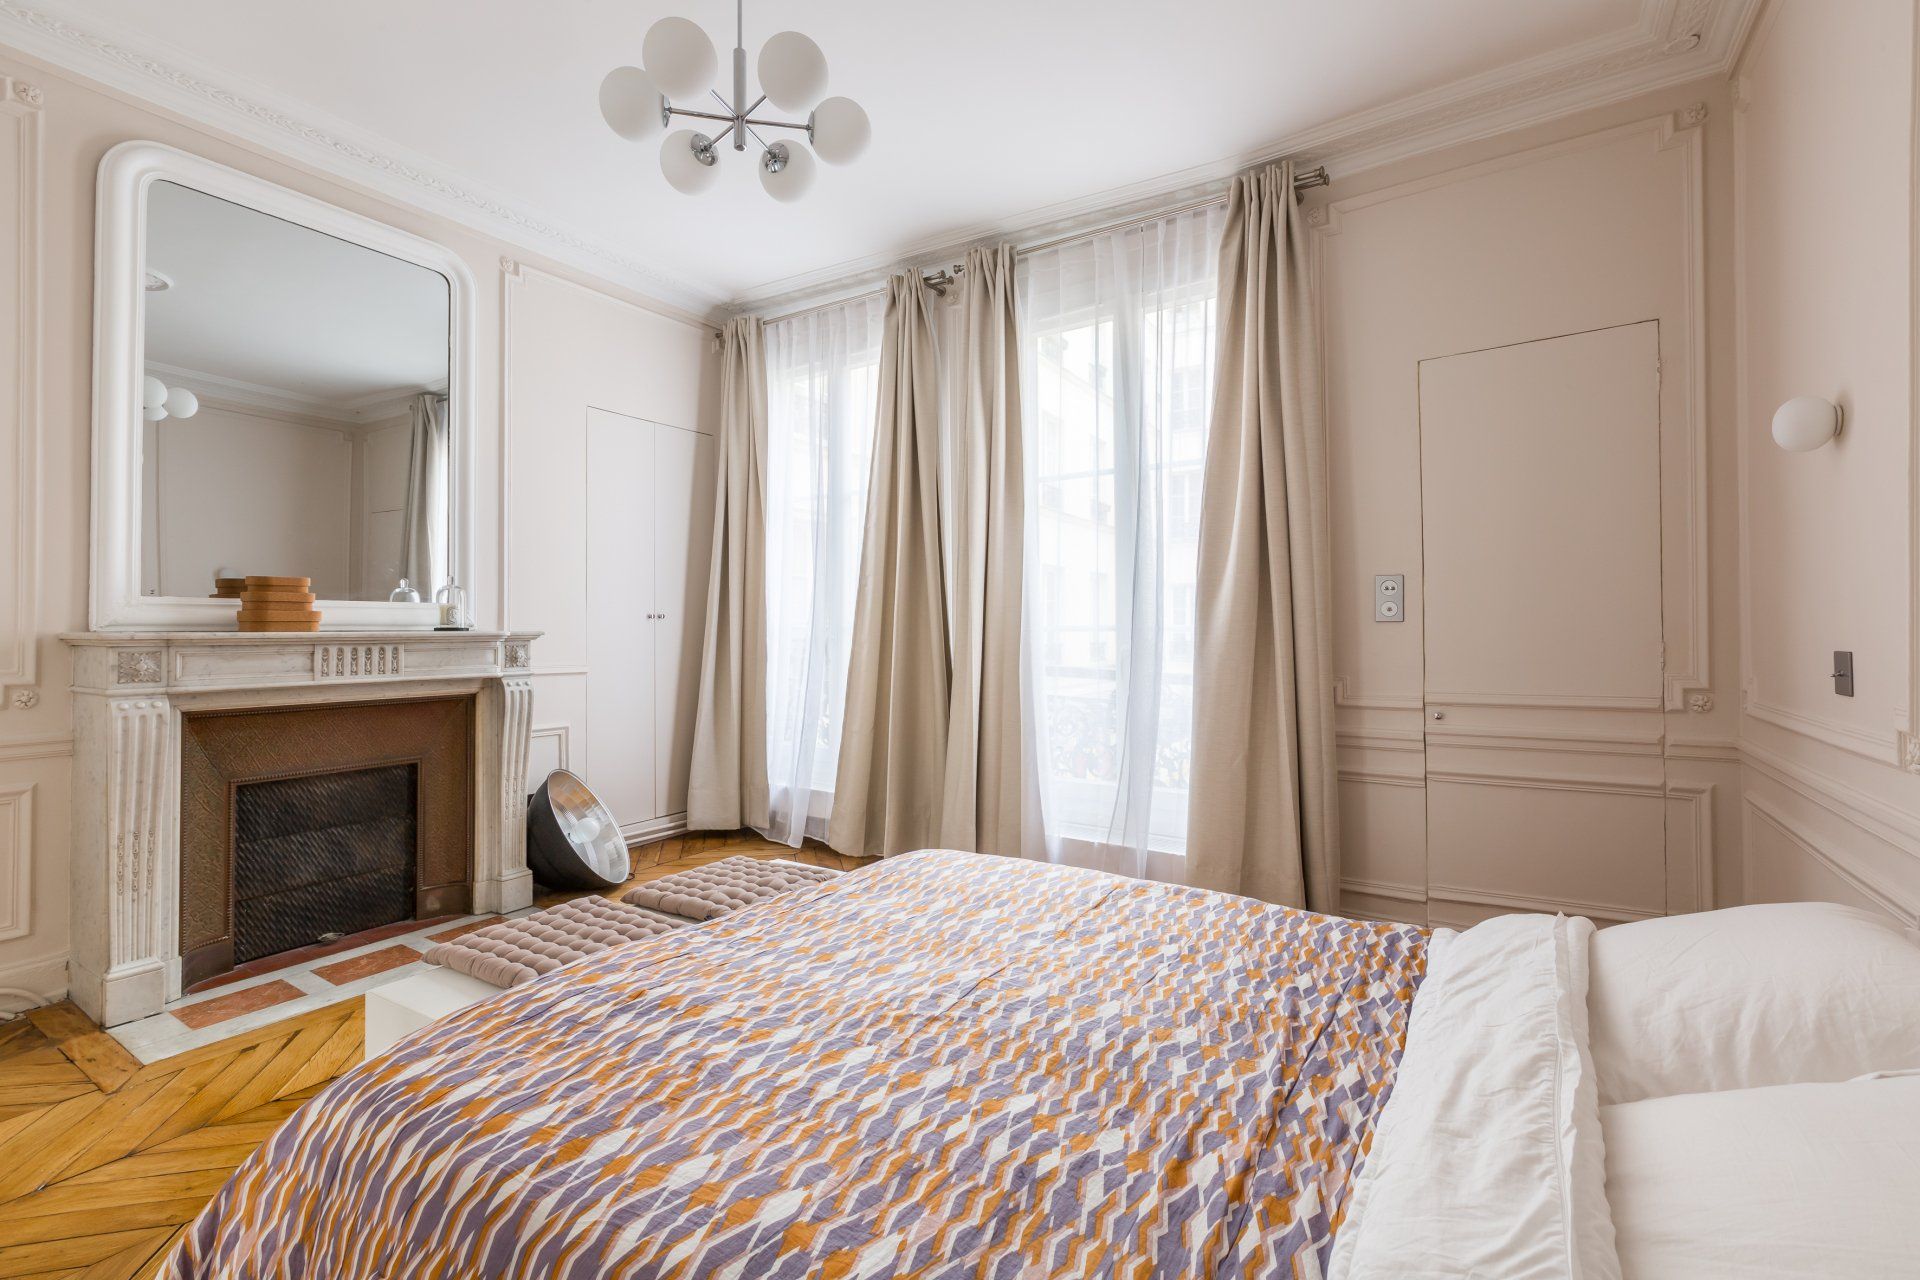 AXIOME Interior Design, architecte d'intérieur Paris, appartement haussmannien Paris 9ème, chambre douce rose